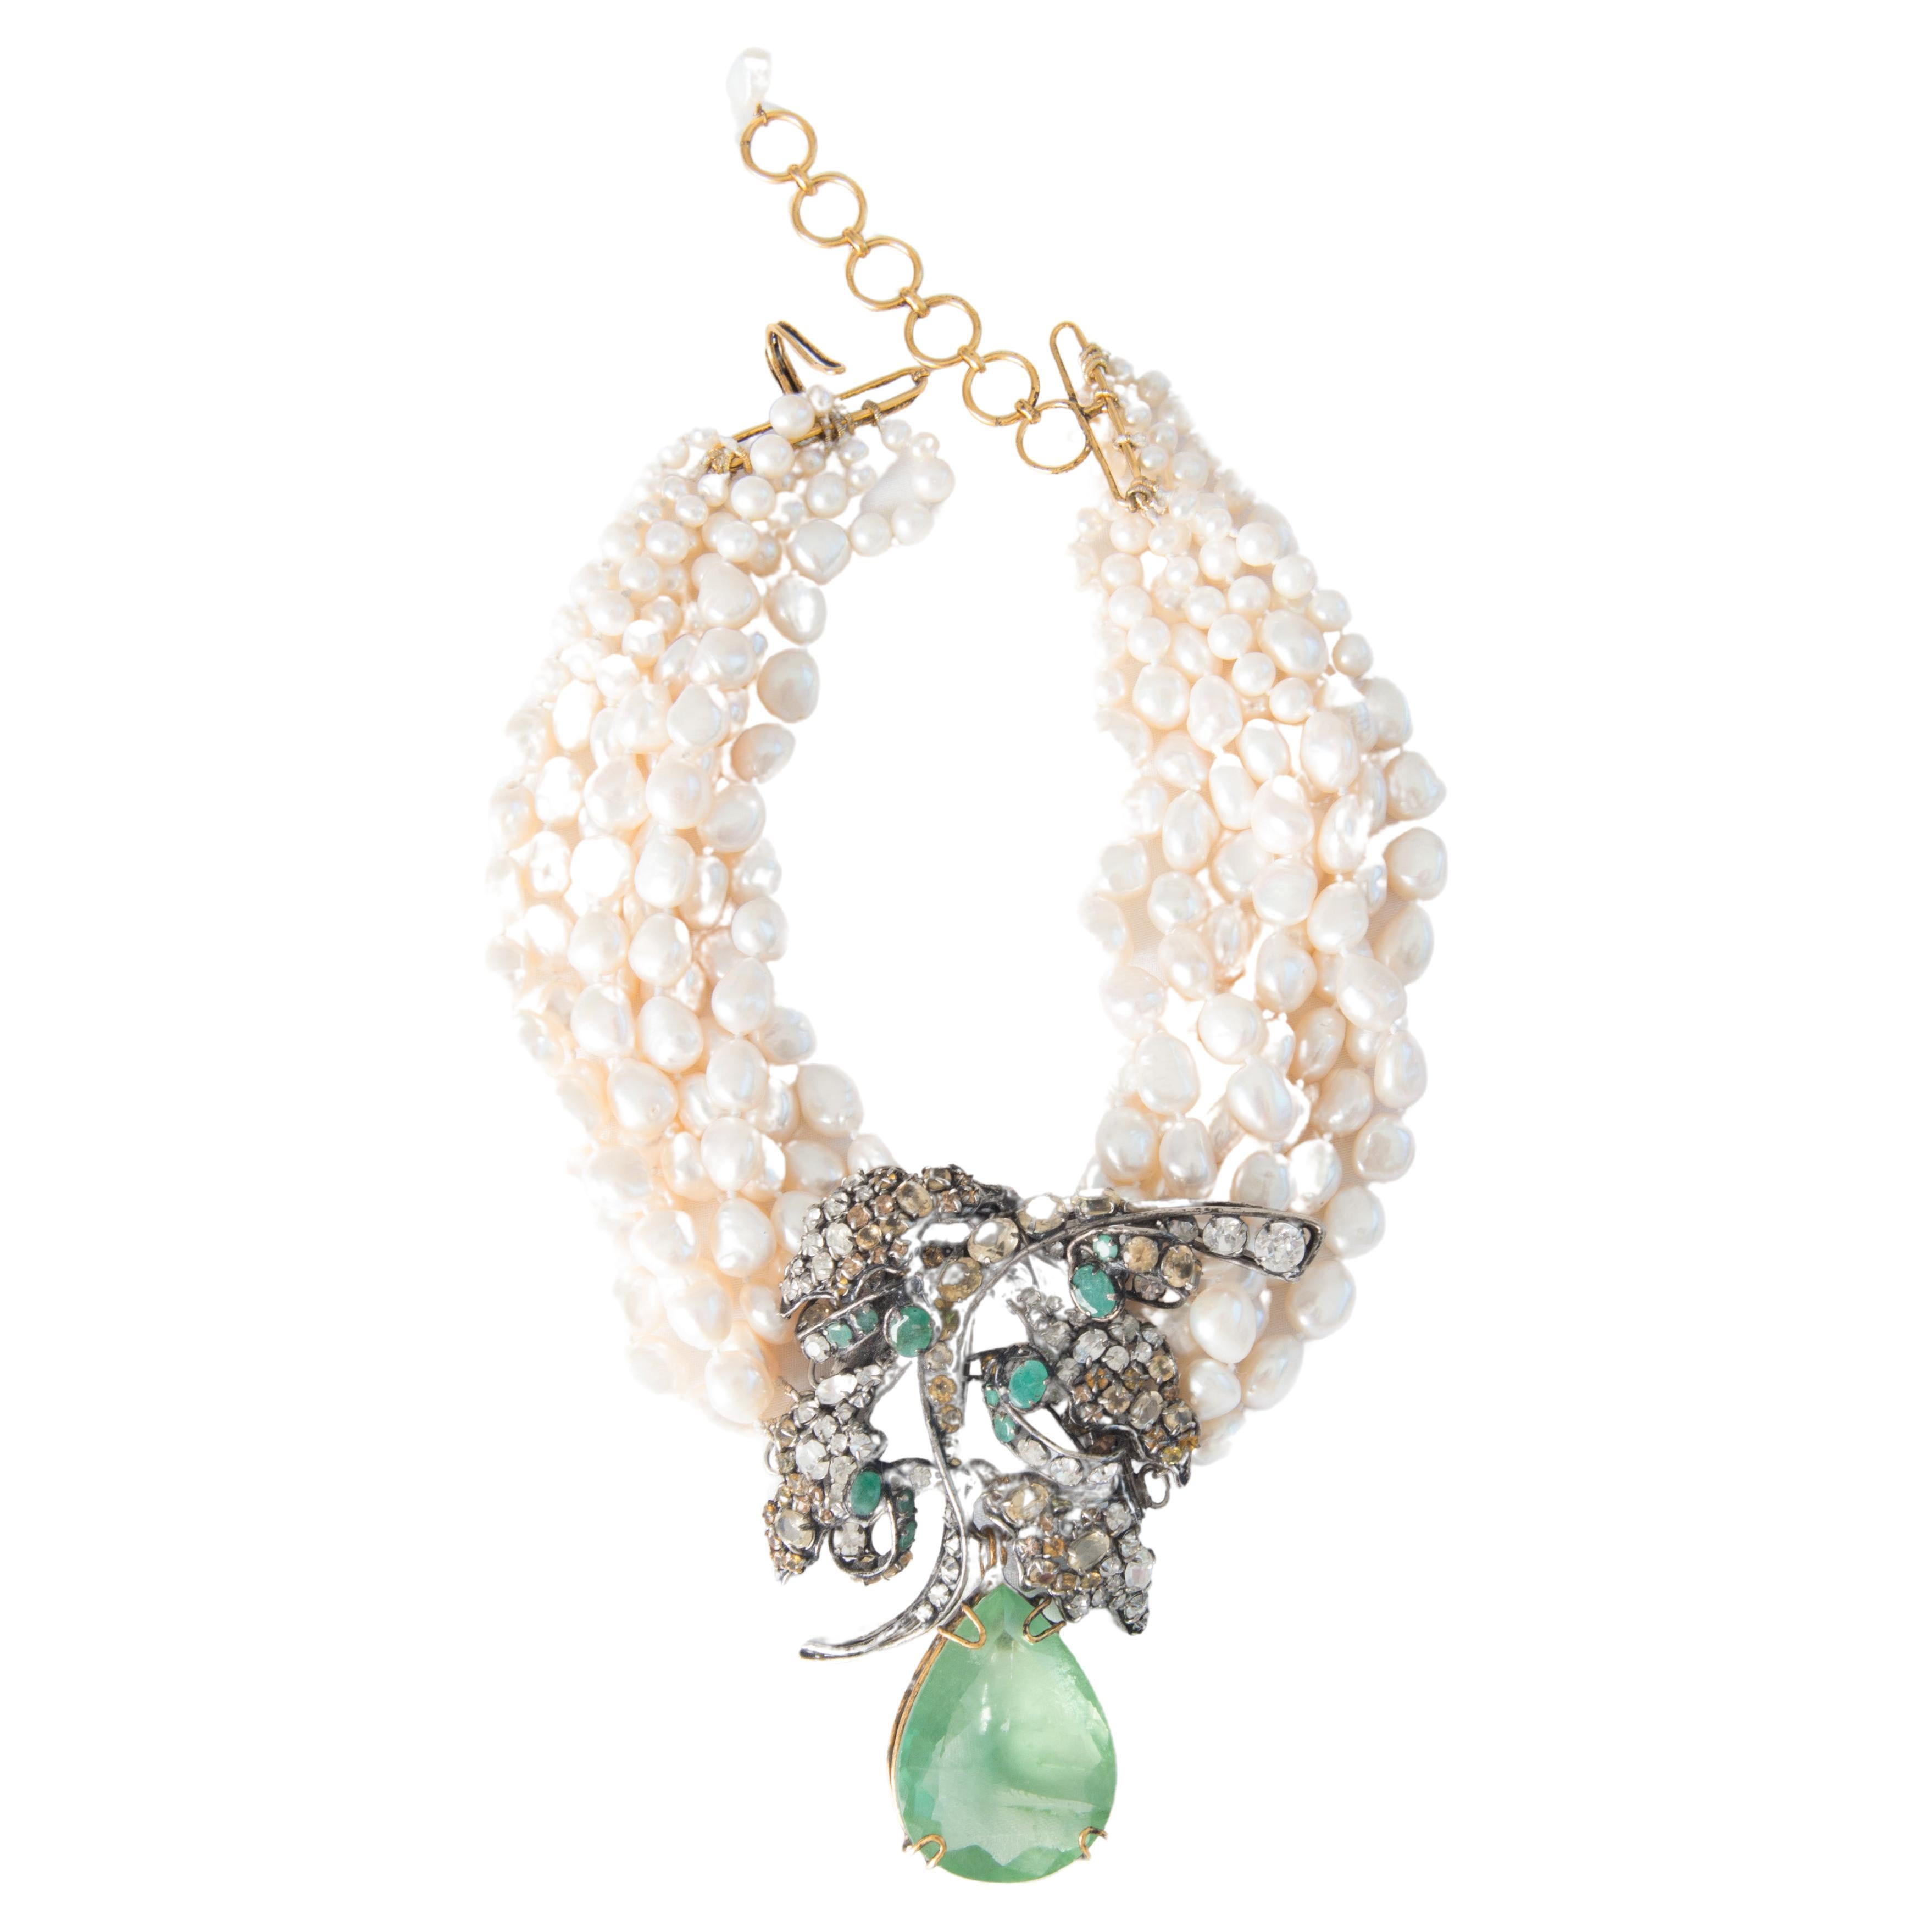 Iradj Moini Smaragdfarbene Edelstein-Perlenkette